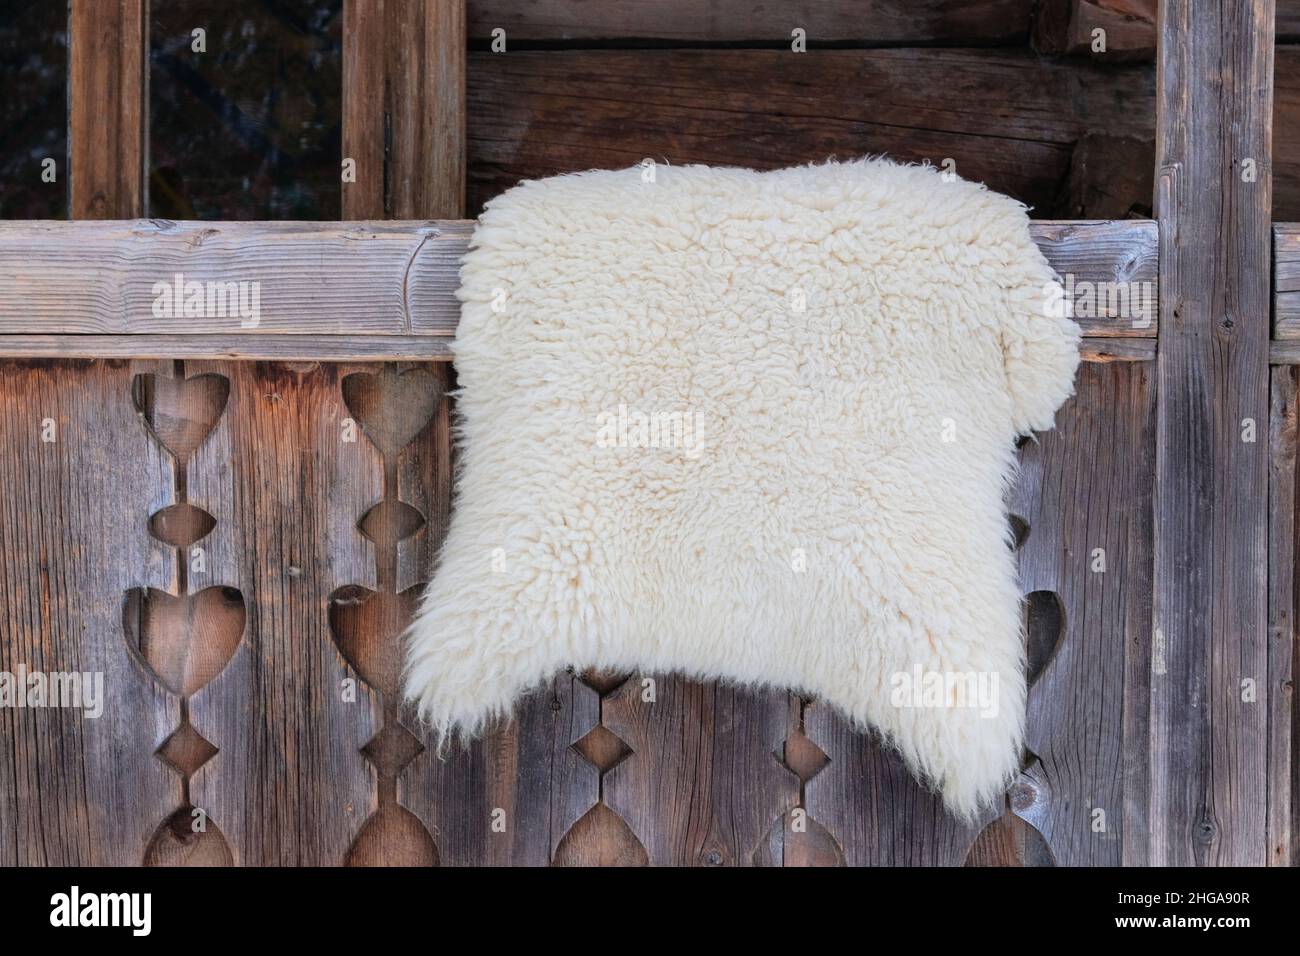 Schafe Haut auf in einem Holzhaus in ländlicher Landschaft. Reise-, Tourismus- und Umweltkonzept. Stockfoto